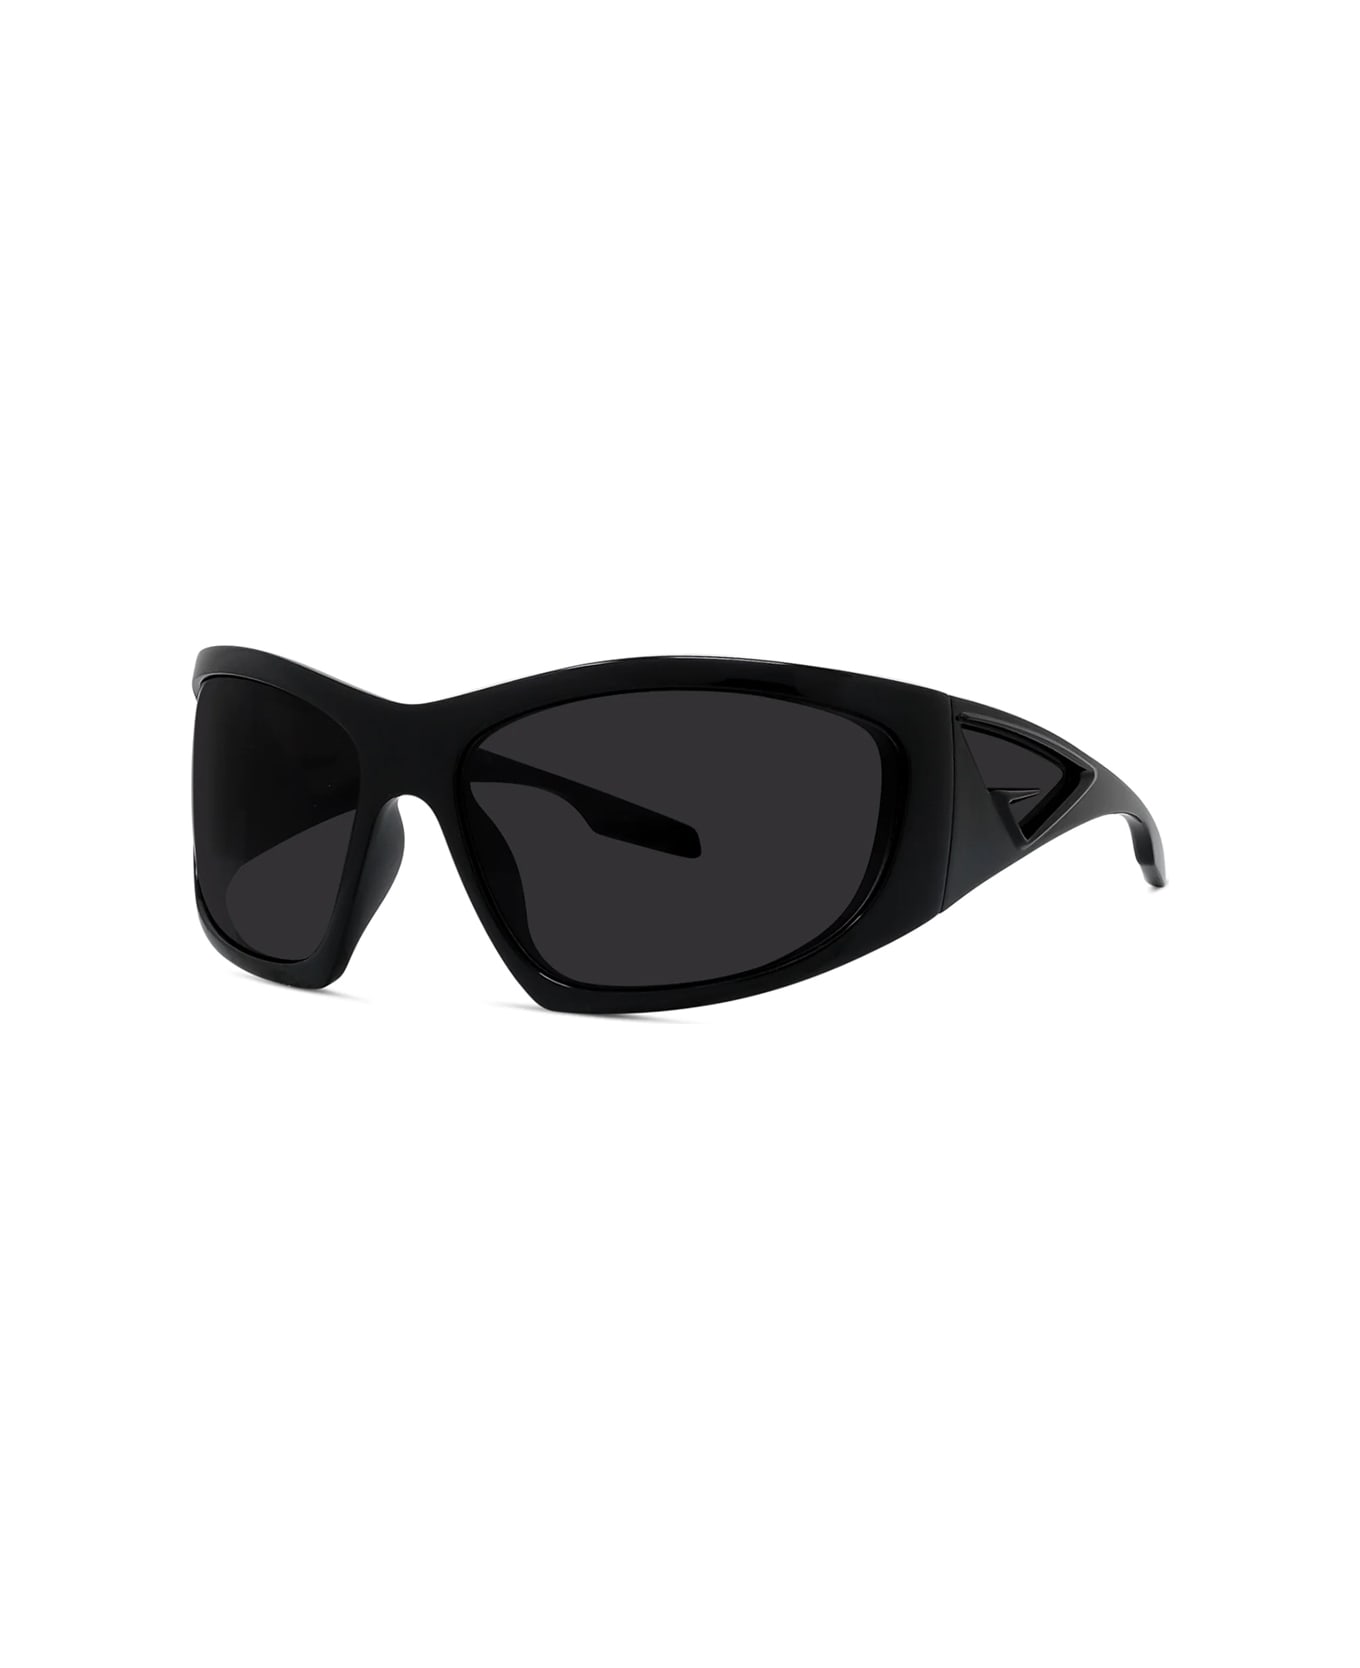 Givenchy Eyewear Gv40051i 01a Dolce Sunglasses - Nero